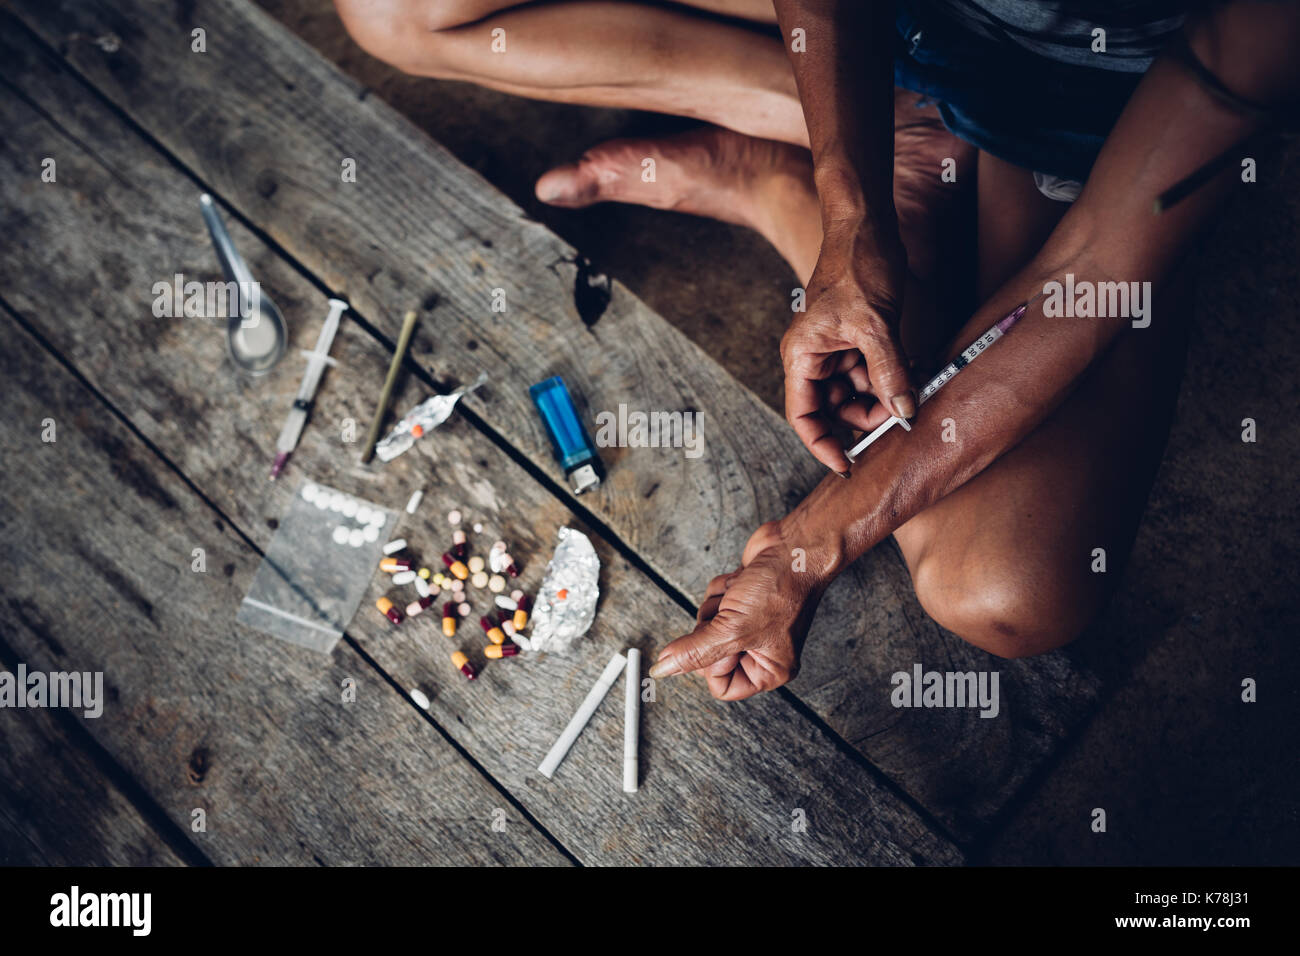 Drogadicto joven con jeringa en acción, el concepto del uso indebido de drogas. Foto de stock